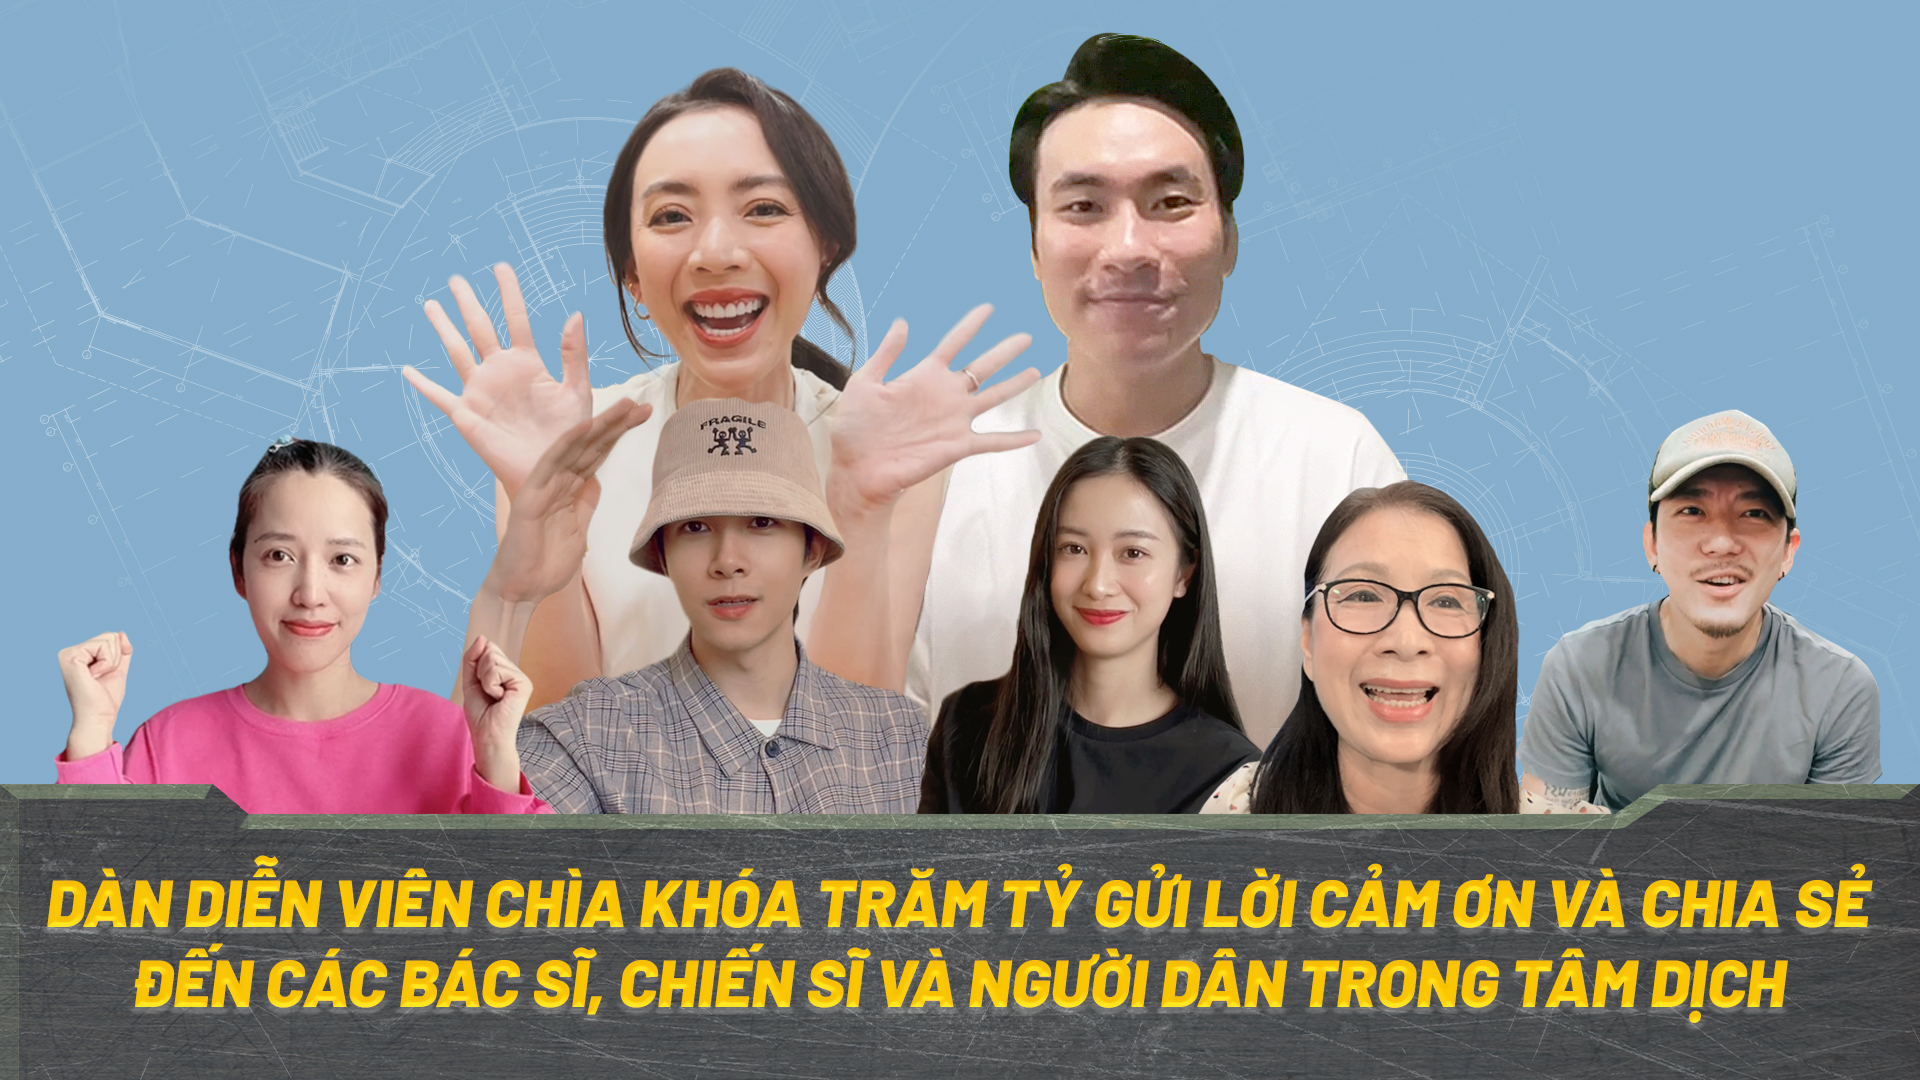 Thu Trang - Kiều Minh Tuấn cùng dàn sao phim Chìa khóa trăm tỷ cổ động chống dịch